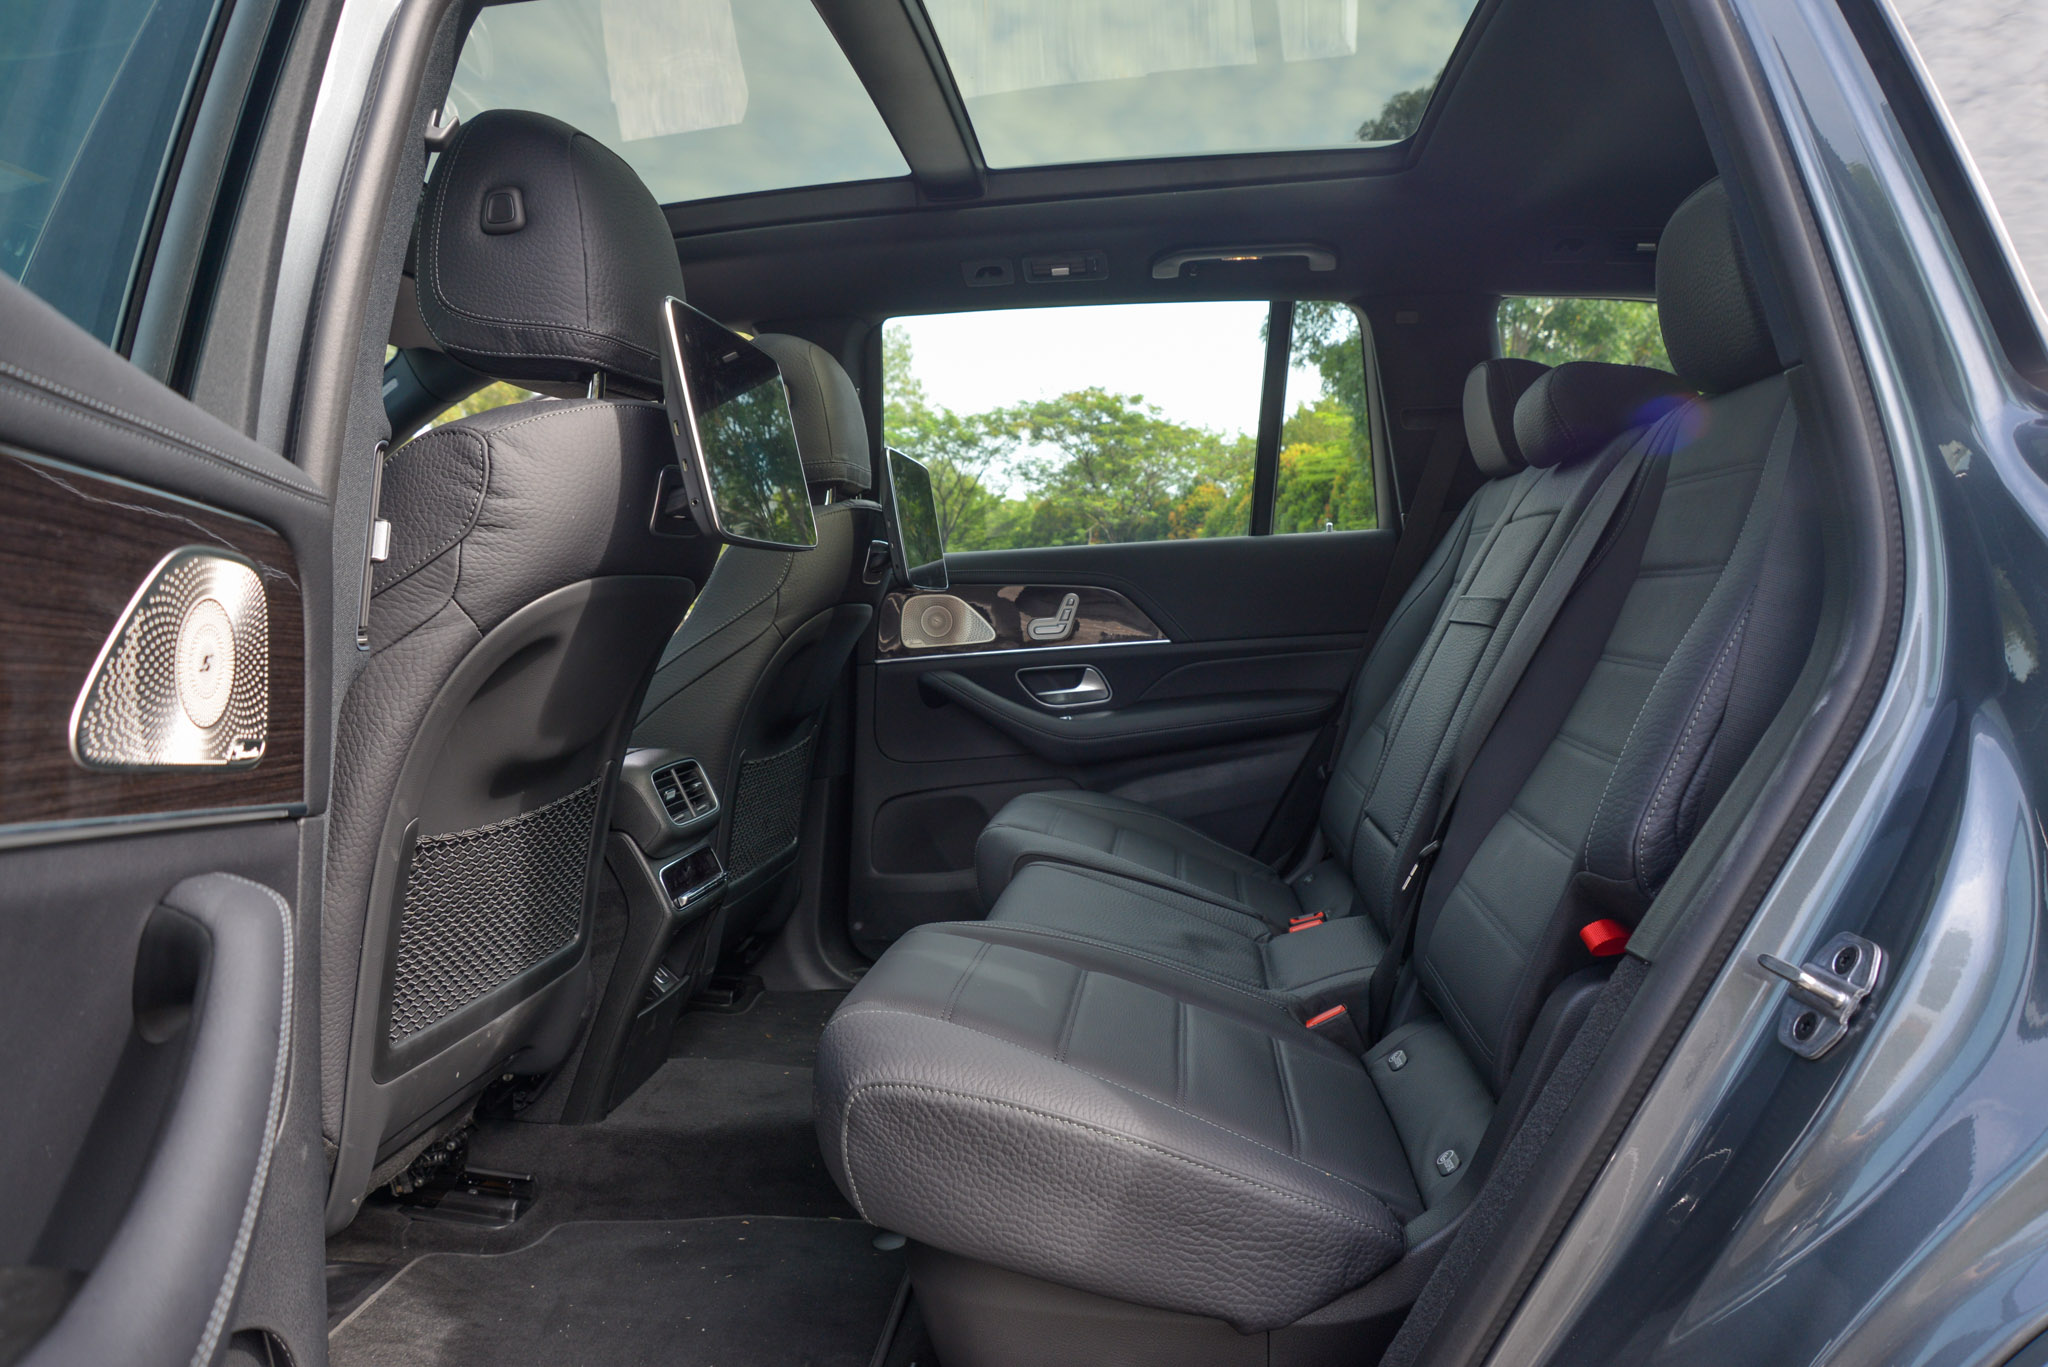 Mercedes GLS interior rear seats